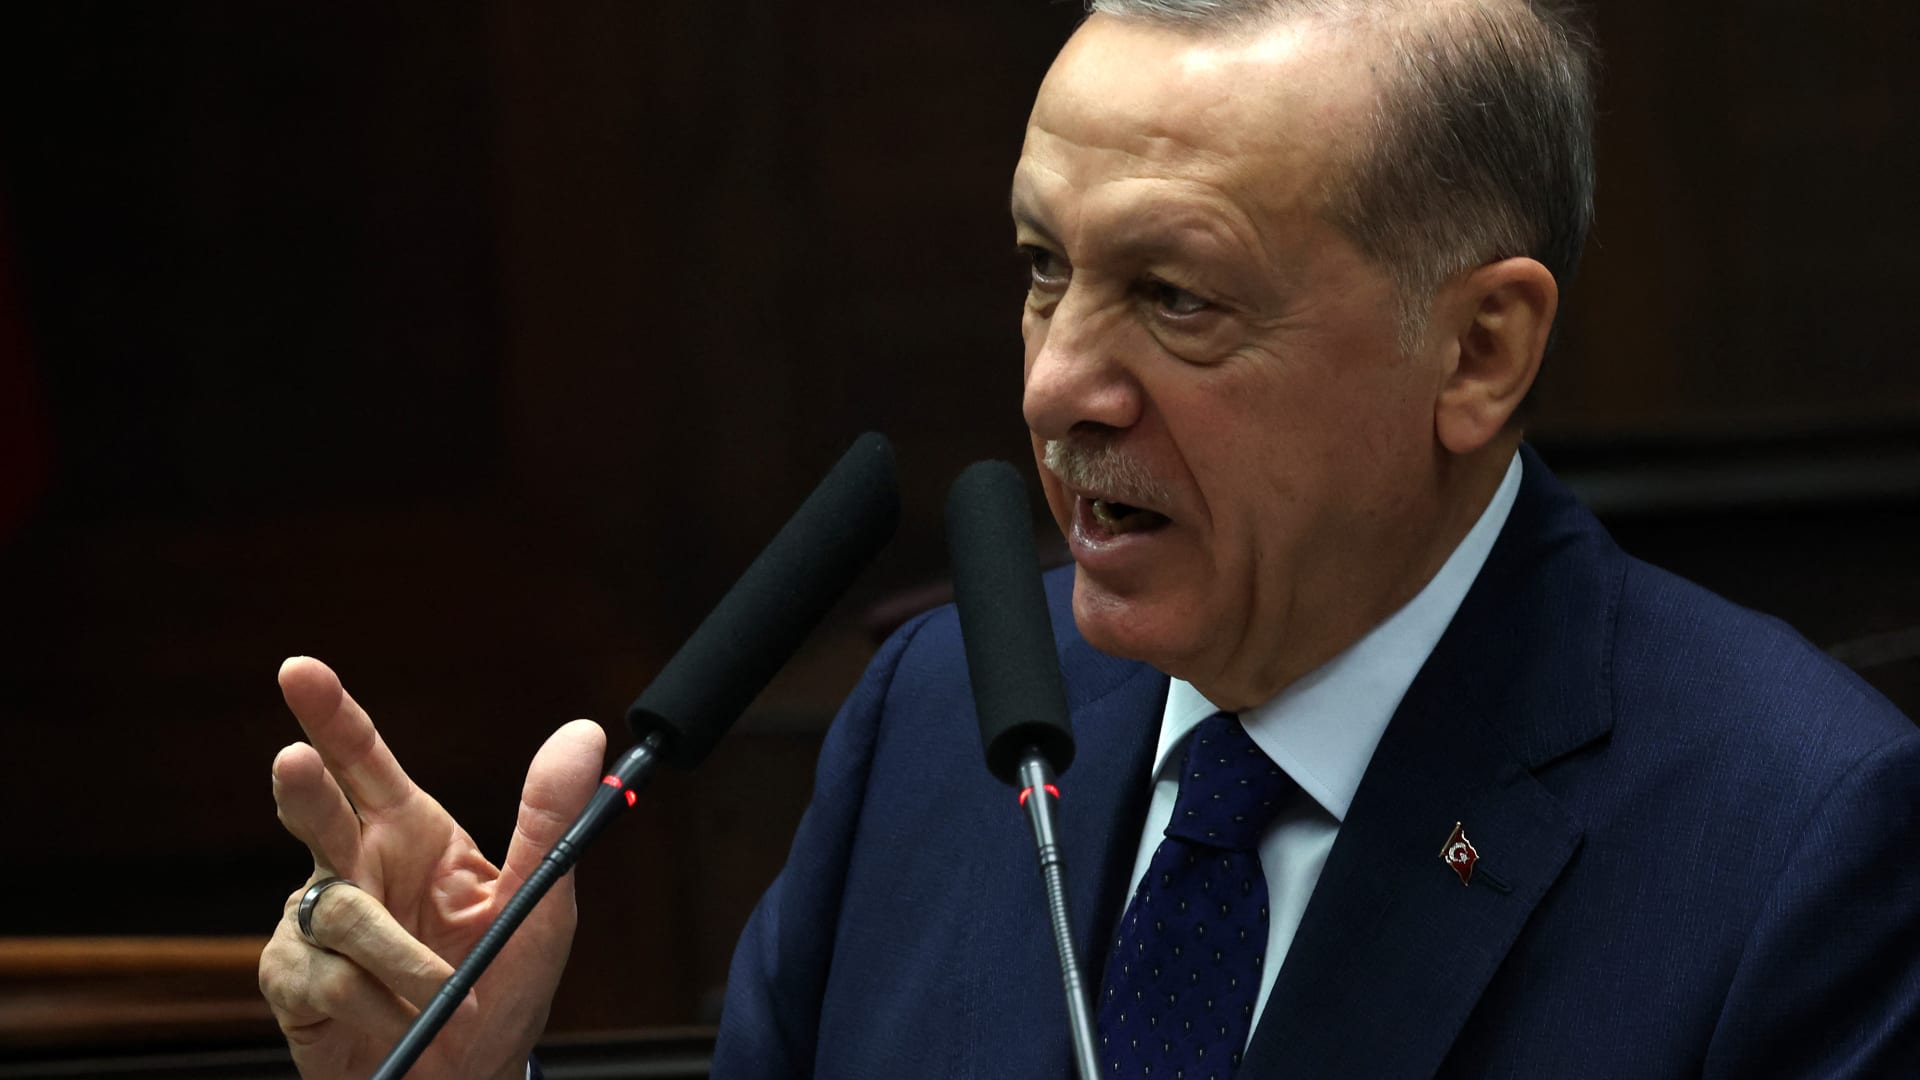 الغضب يتصاعد في تركيا من الحكومة إثر الزلزال.. وأردوغان يعترف بـ"تقصير"